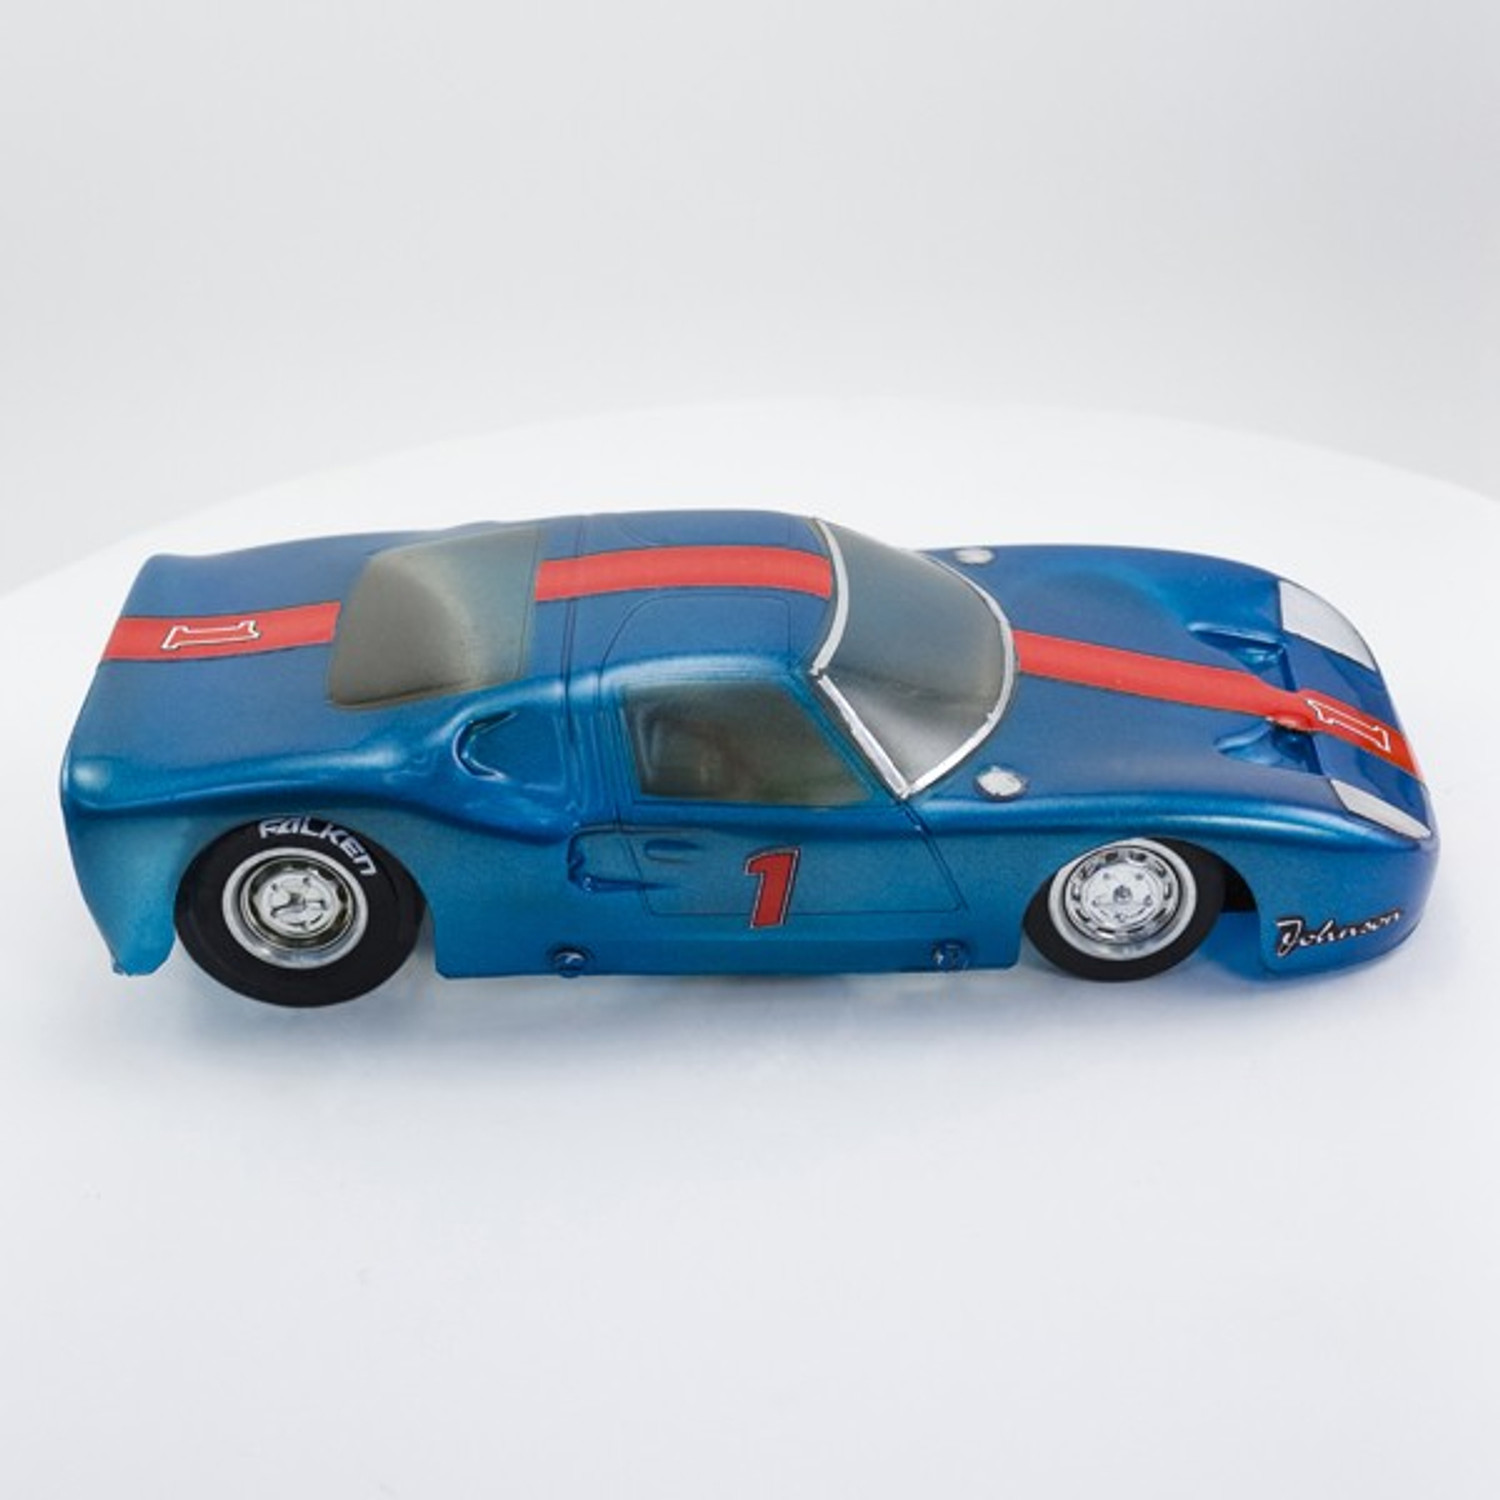 Stock Number: 16128 Blue Ferrari by Eldon